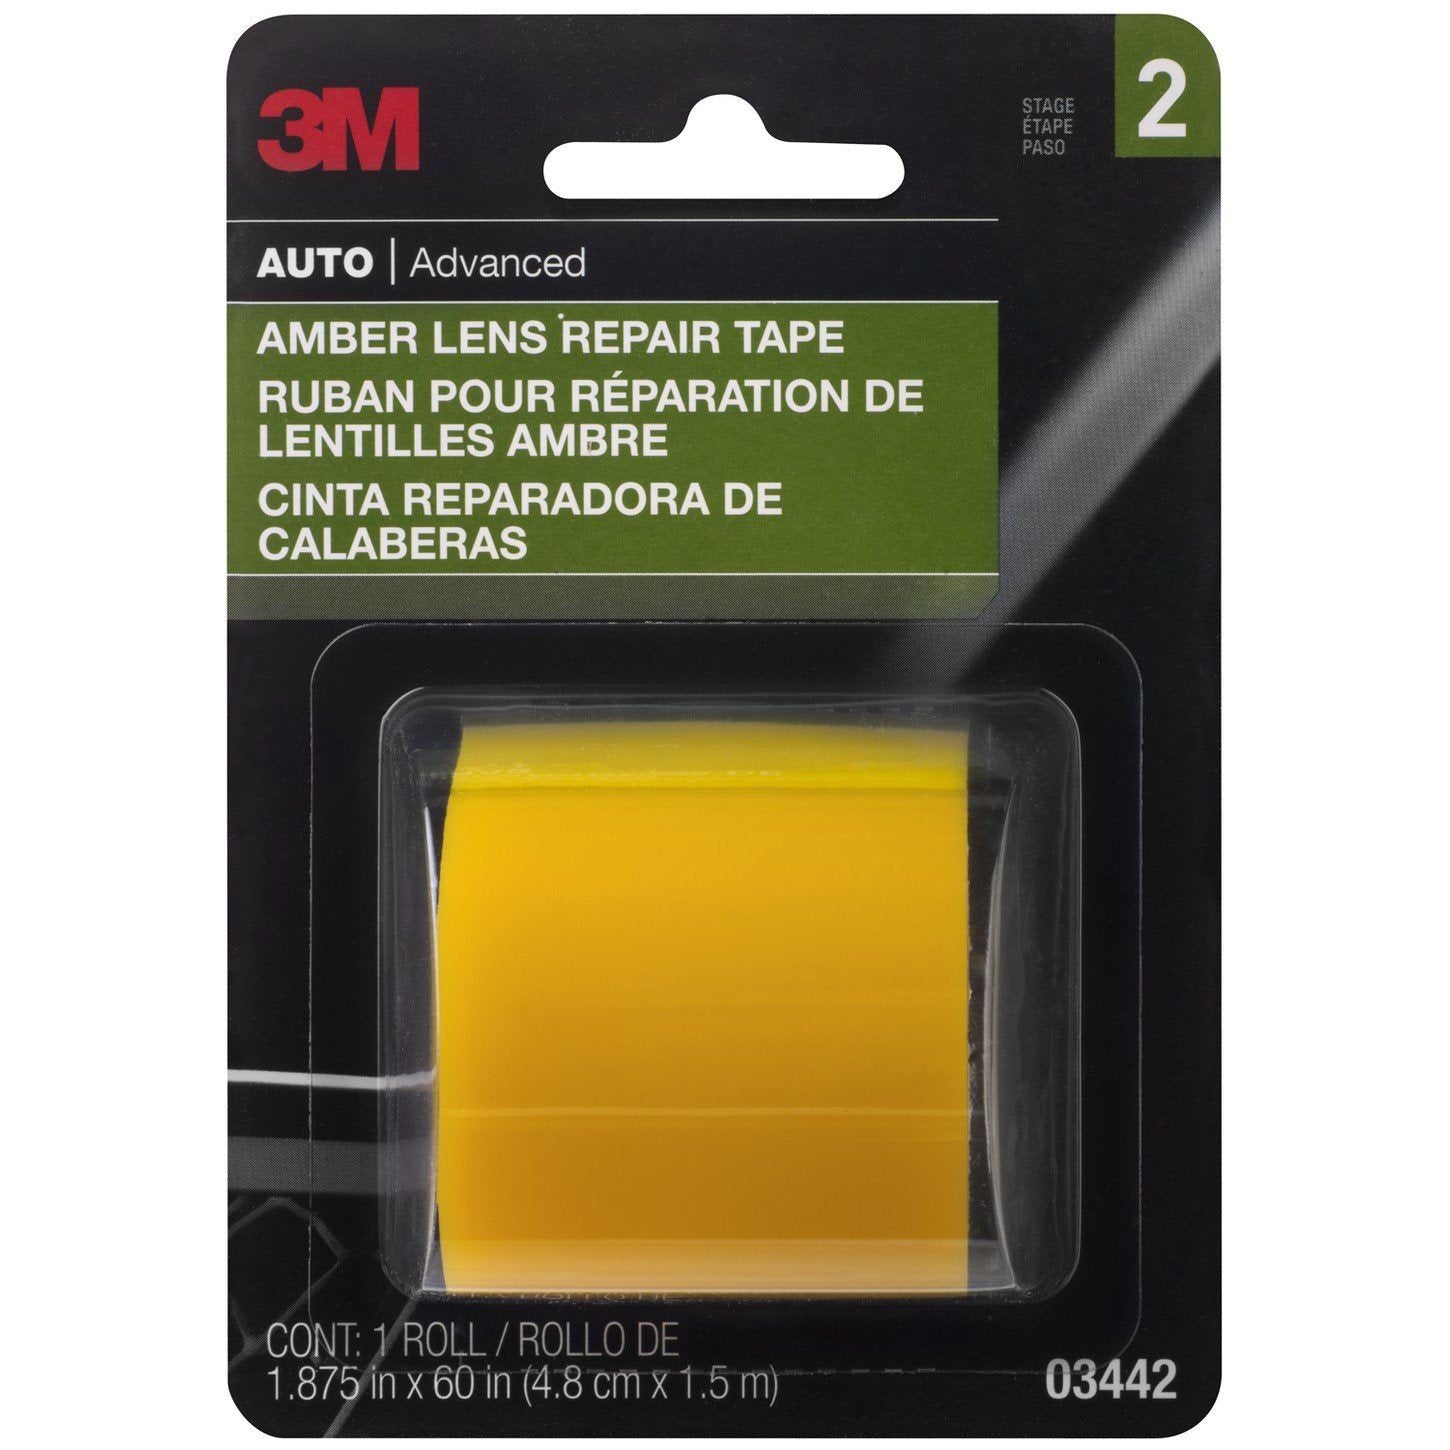 3M Amber Lens Repair Tape, 03442, 1.875 in x 60 in - Opticdeals